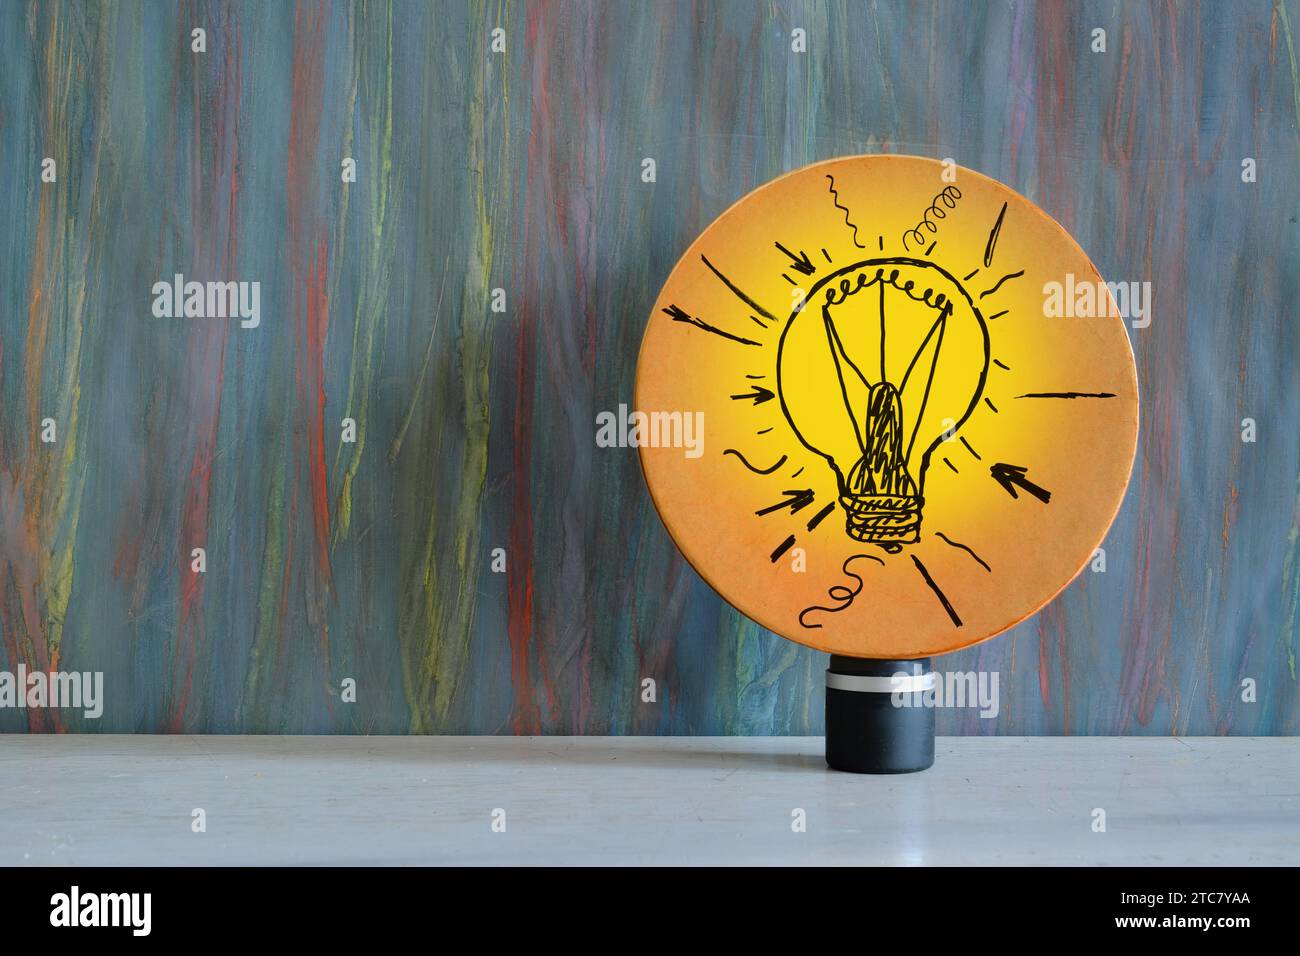 Geschäftskonzept: Brainstorming, Innovation, Idee, Problemlösung. Schild mit Glühbirne auf grungy Hintergrund, großer freier Kopierraum. Stockfoto